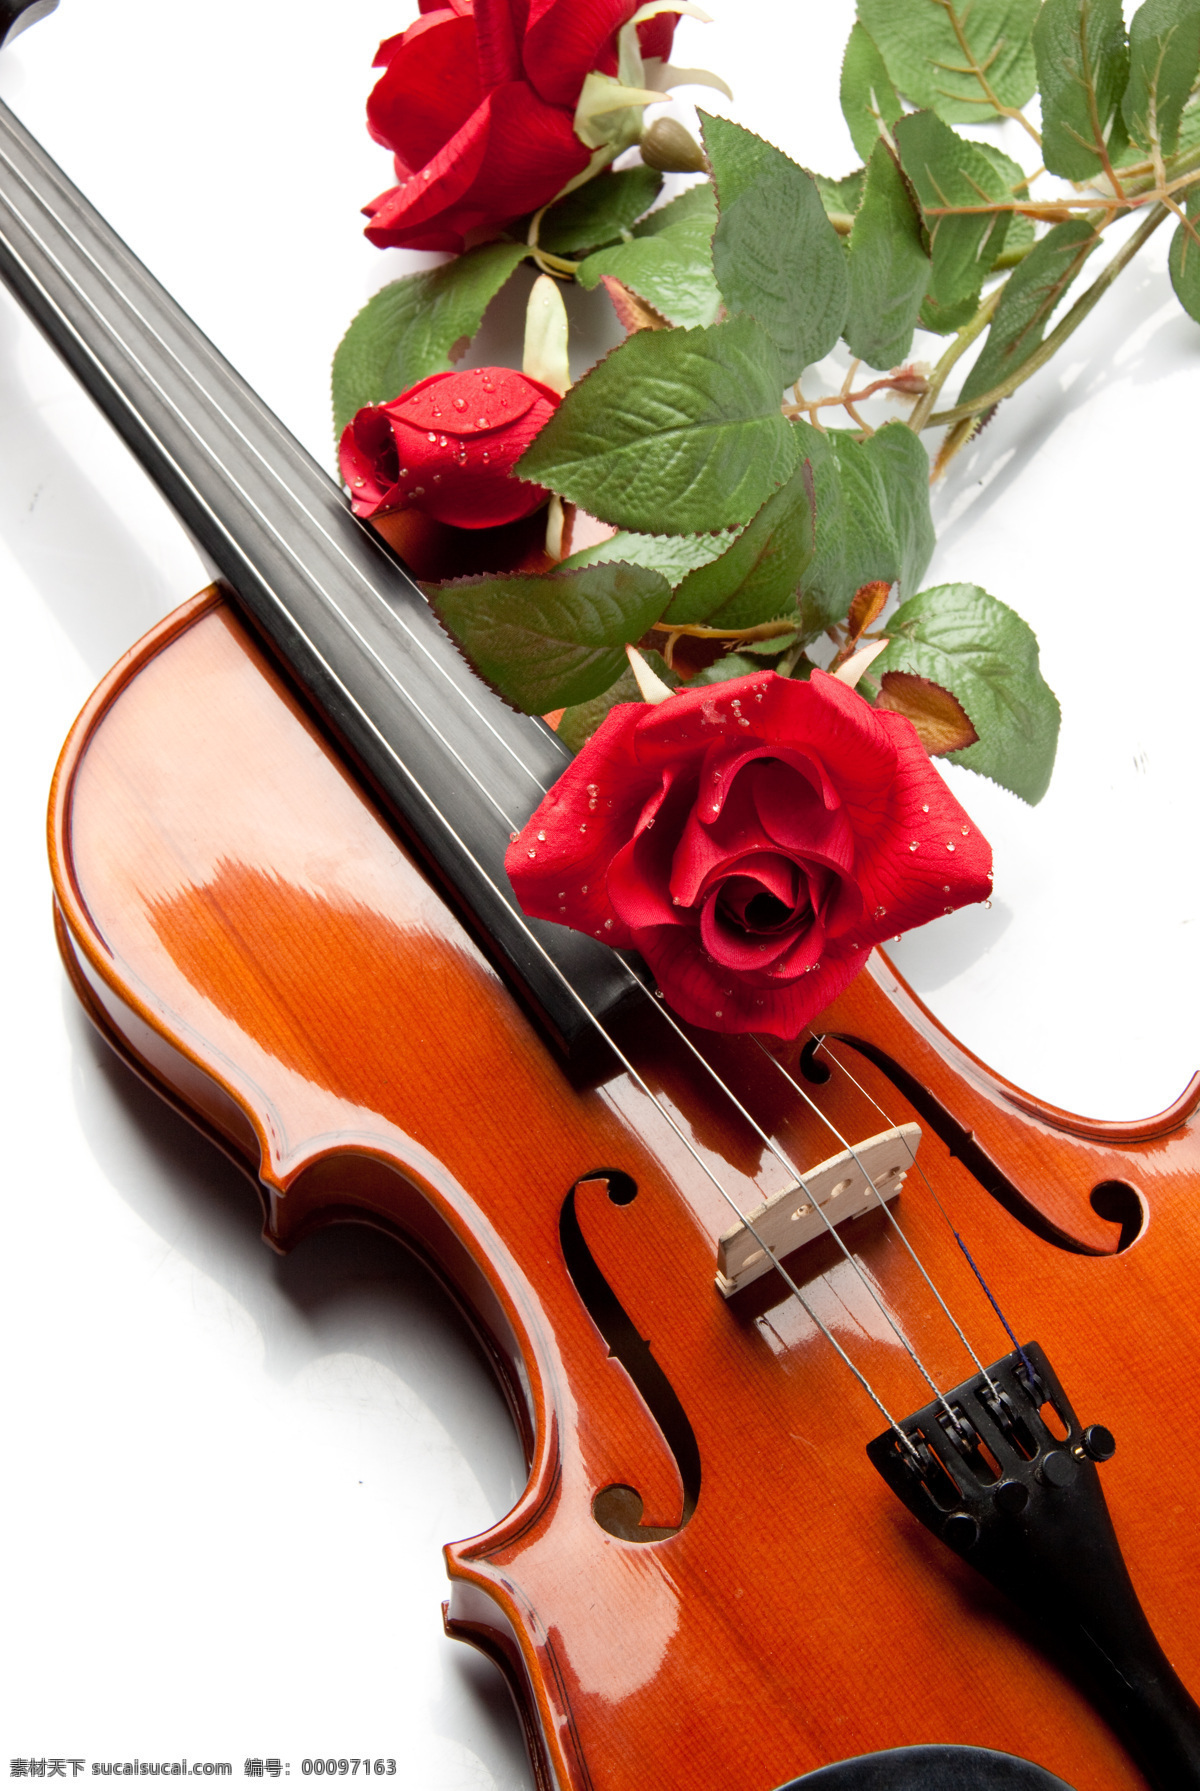 小提琴 木质小提琴 红玫瑰 玫瑰花 红木小提琴 乐器 乐谱 舞蹈音乐 文化艺术